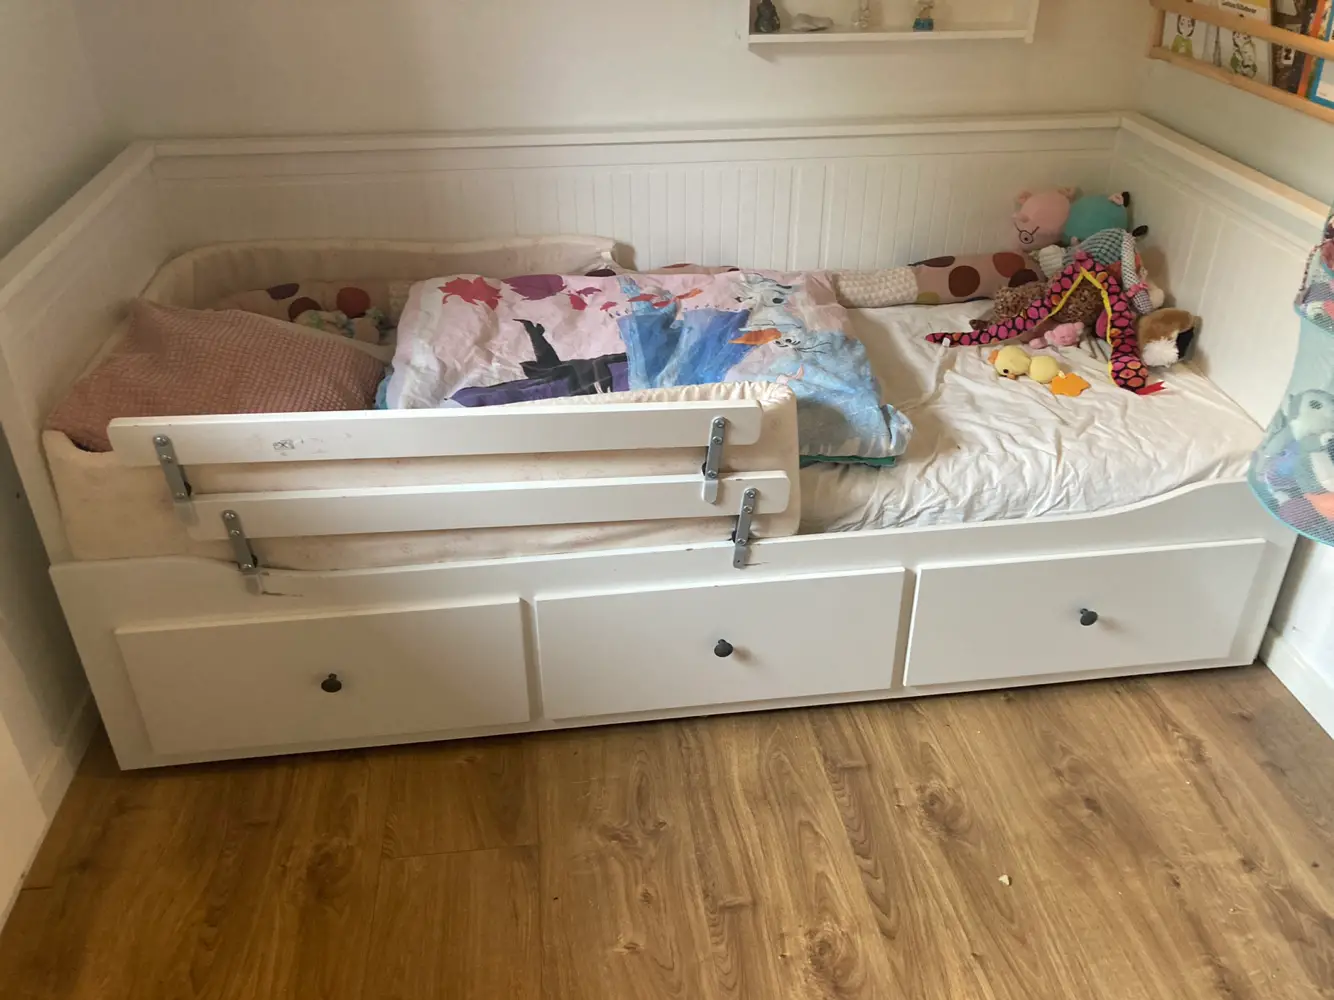 Køb Hemnes seng af Anne på Reshopper · Shop secondhand til børn, og bolig